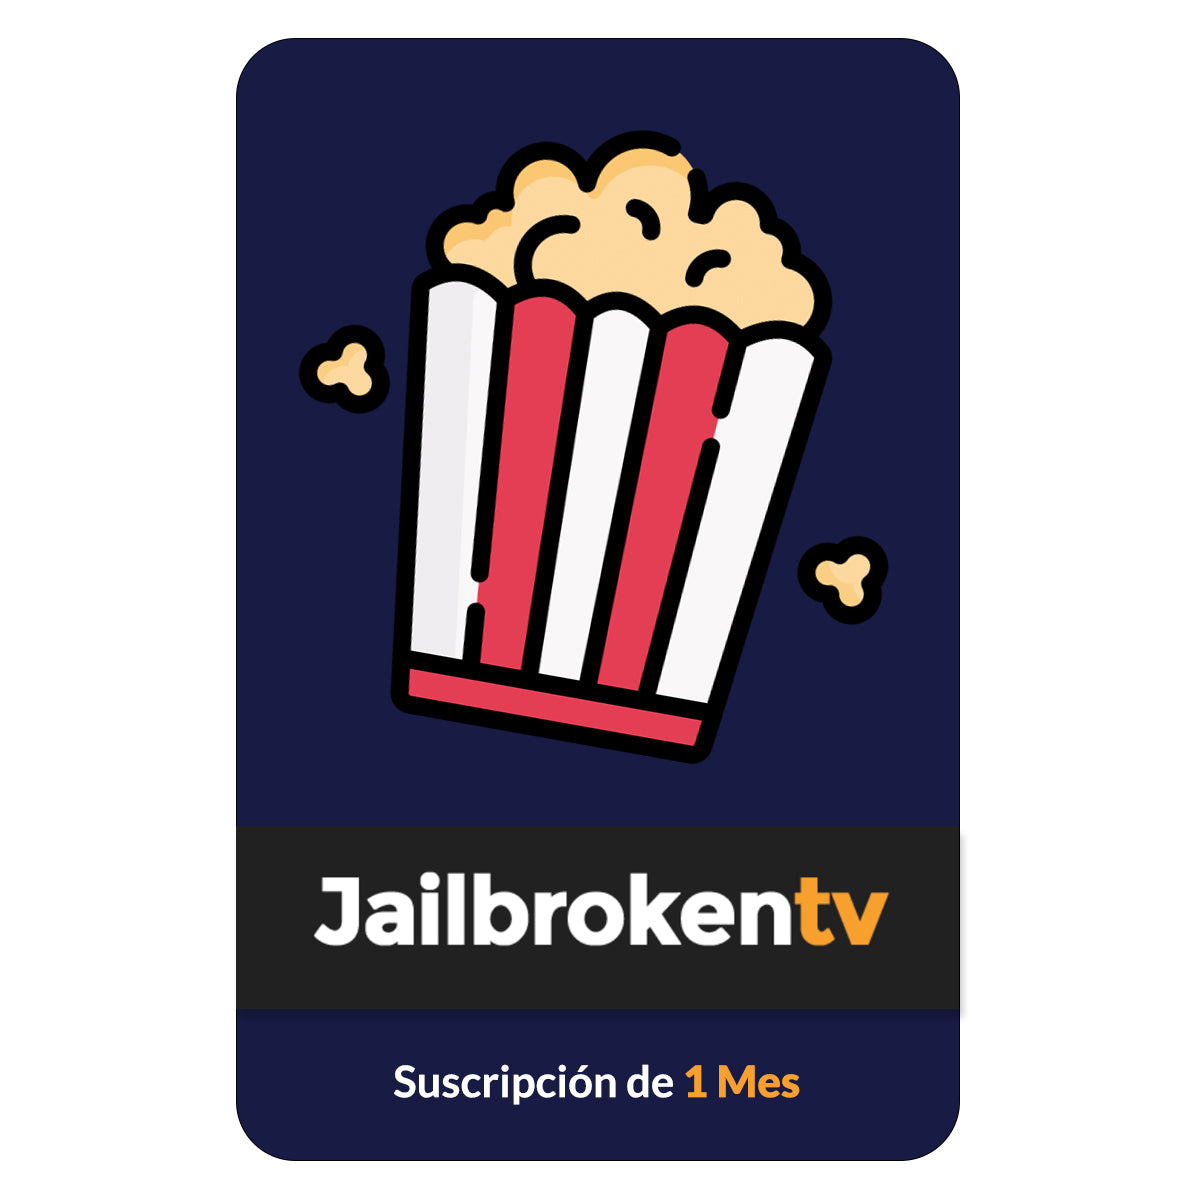 Tarjeta JailbrokenTV - Suscripción 1 Mes + cargo por servicio - Multimax